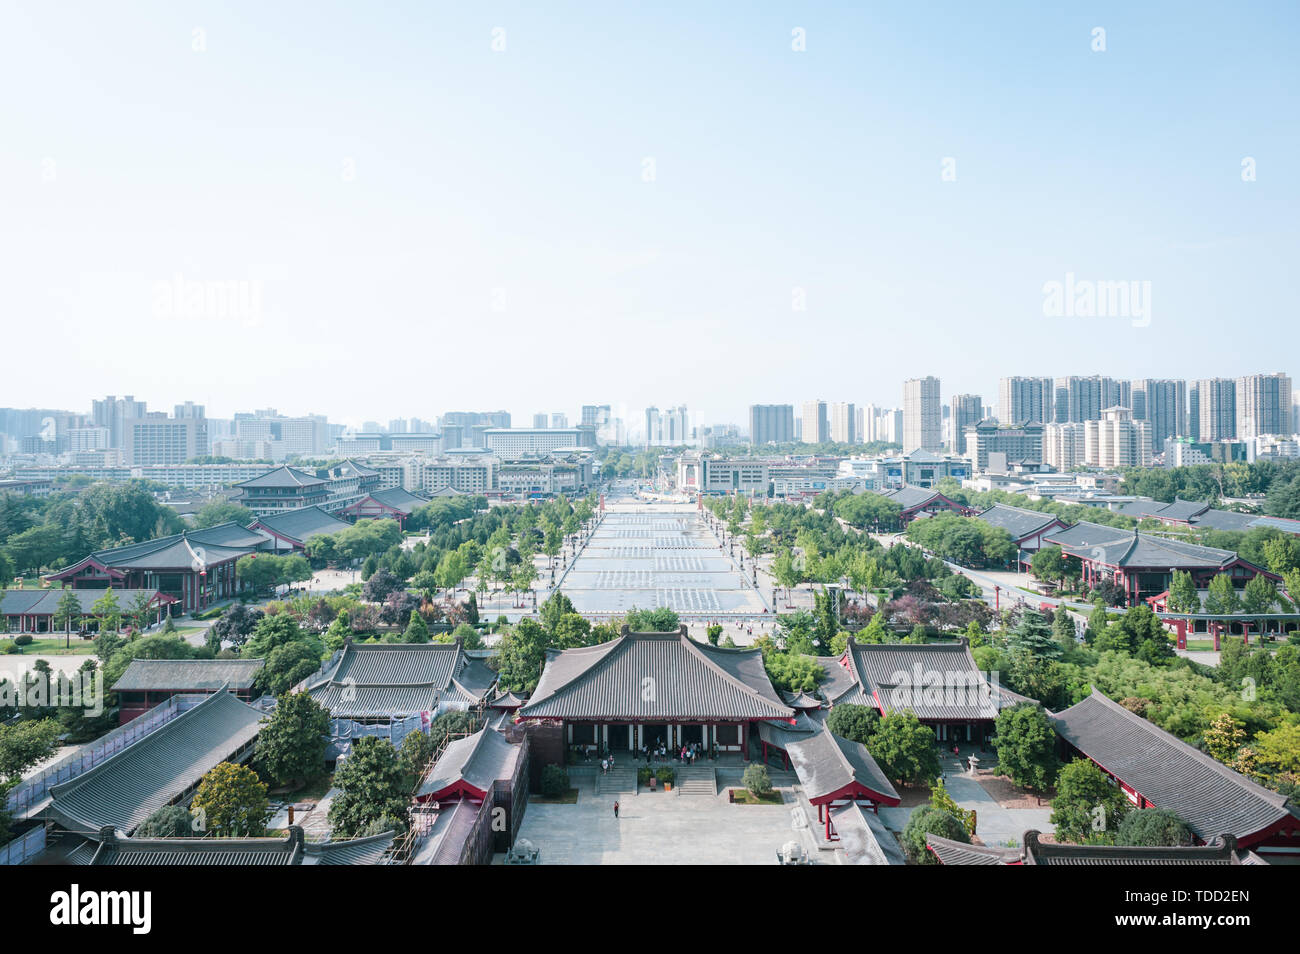 Donnant sur l'architecture de la ville de Xi'an à partir de la Grande Pagode de l'Oie Sauvage Banque D'Images